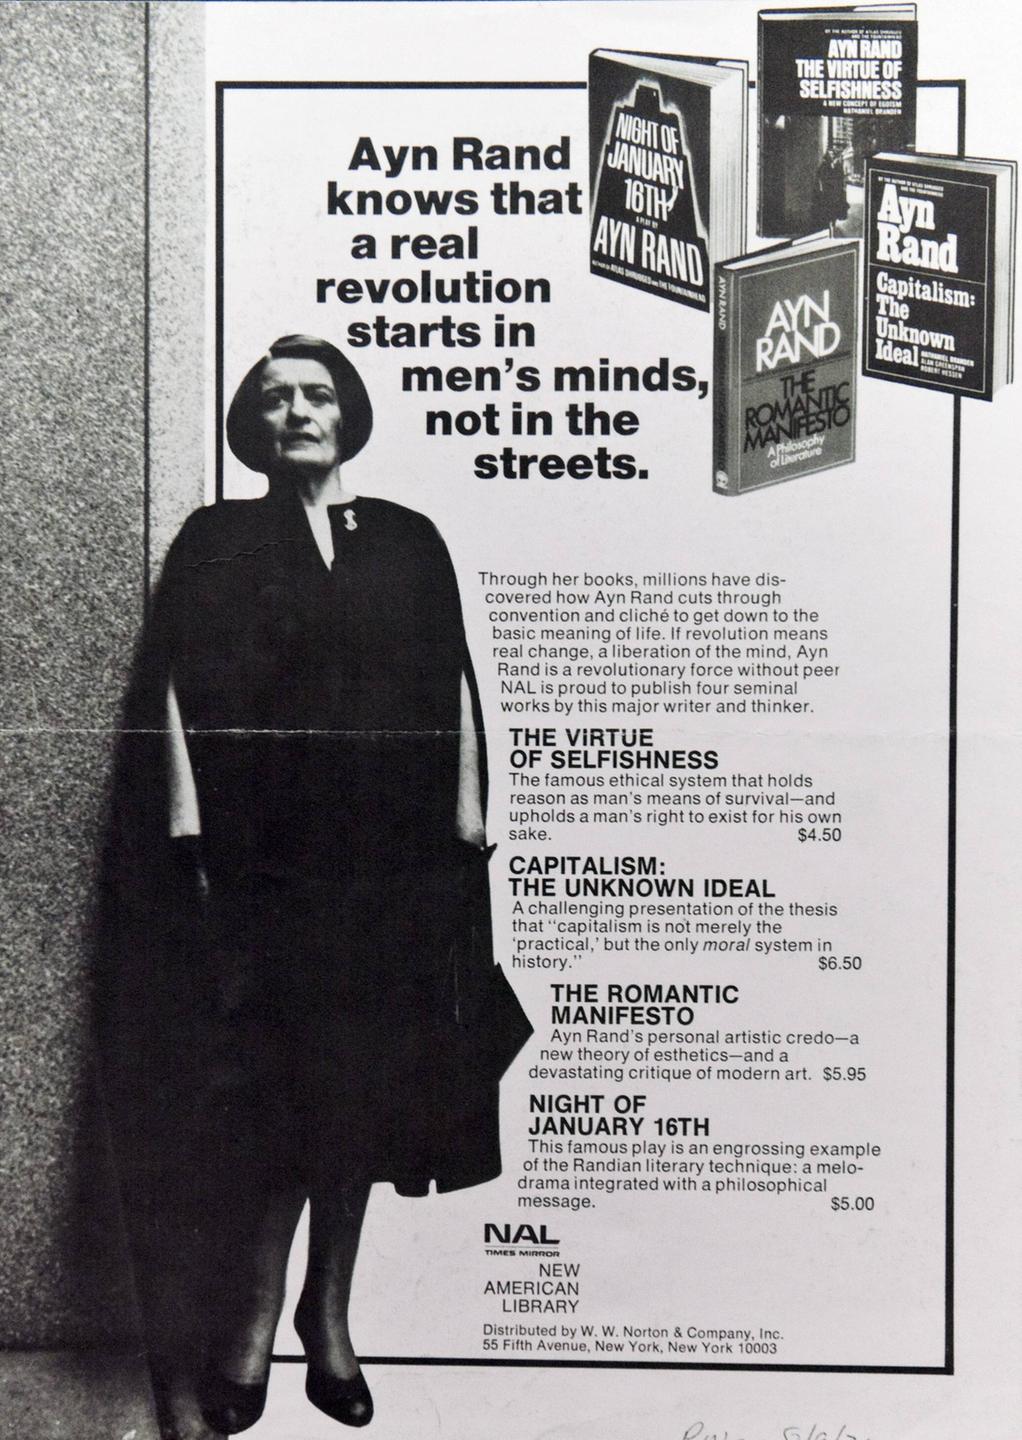 Ein Werbeplakat von Ayn Rand zeigt die Autorin von Kopf bis Fuß, einige ihrer Bücher und den Slogan "Ayn Rand knows that a real revolution starts in men's minds, not in the streets".